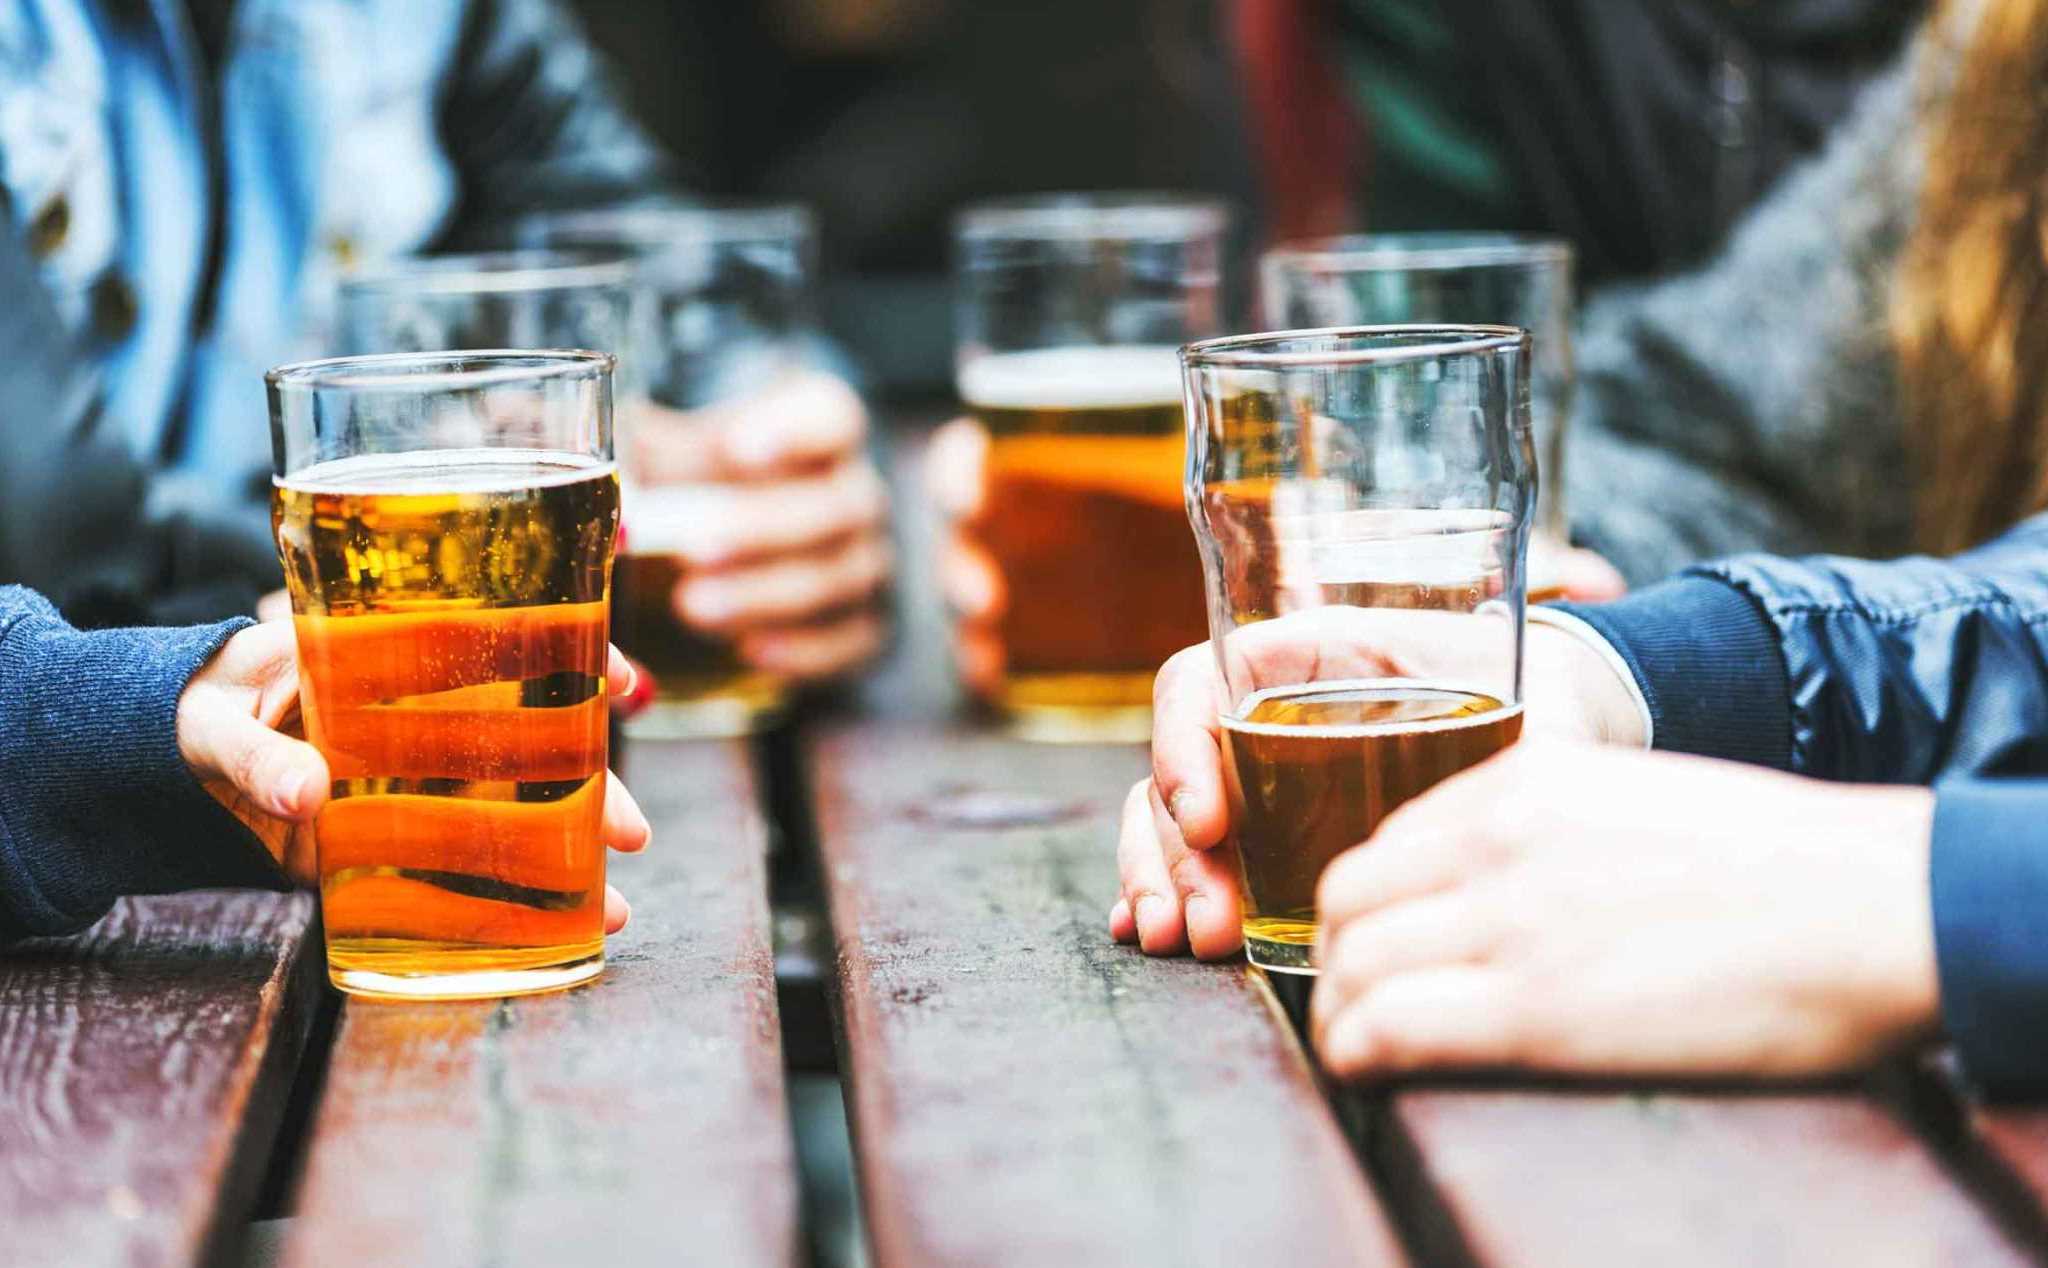 Bia rượu gây ảnh hưởng đến gan như thế nào?